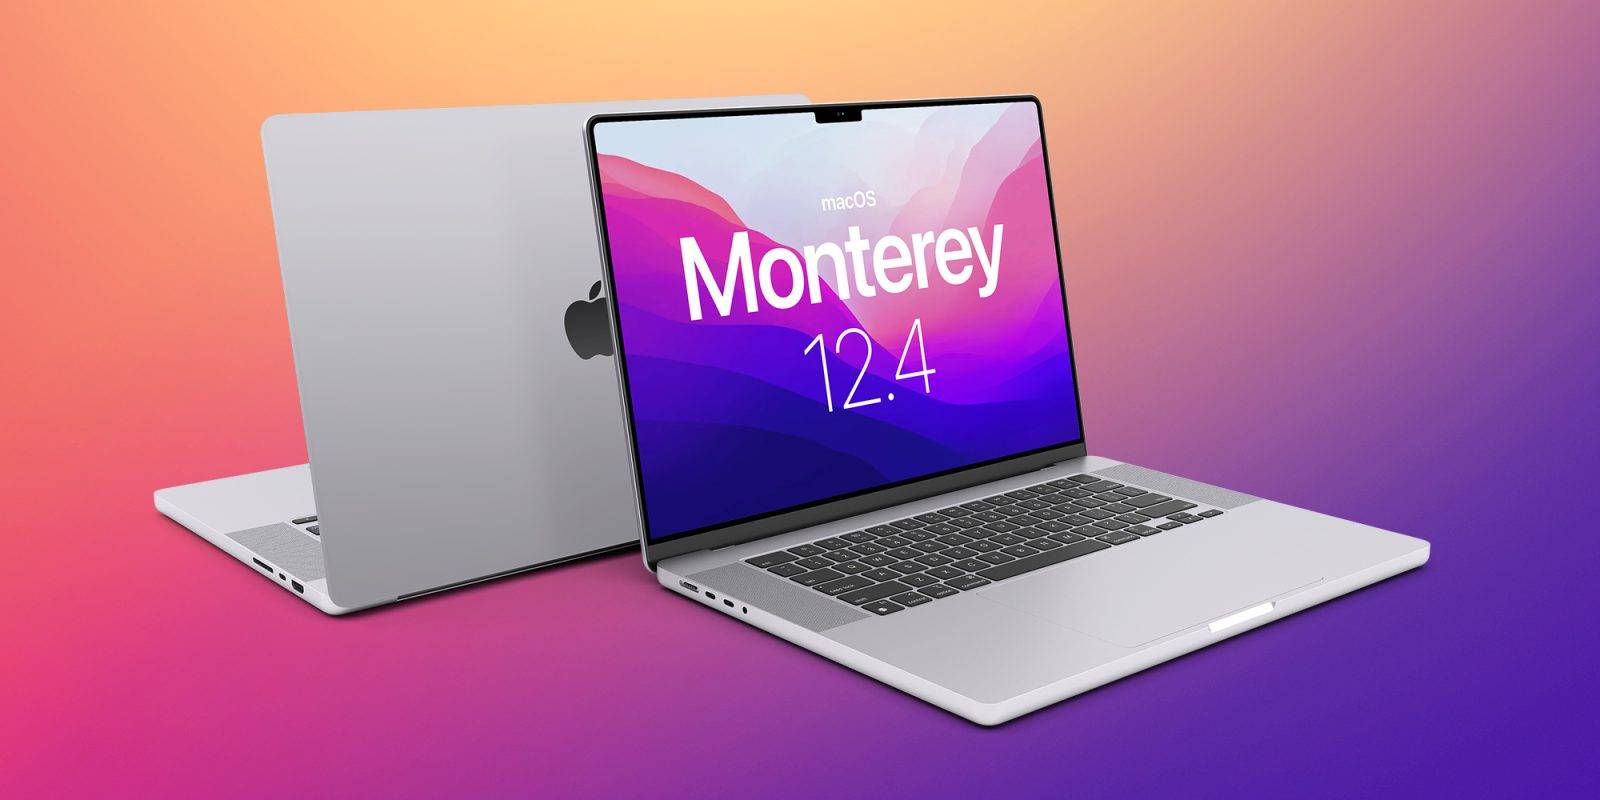 macOS-monterey-12.4-01